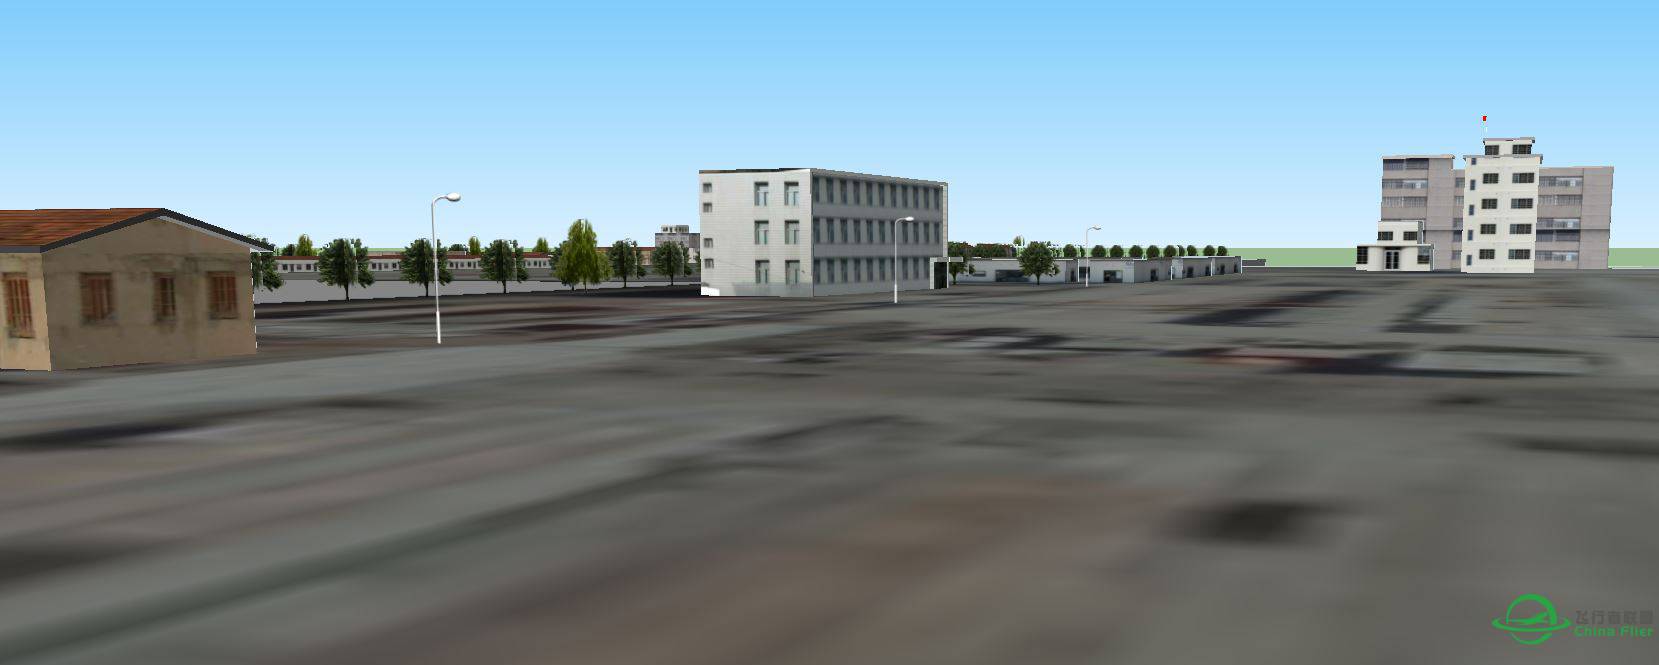 长兴岛地景的横沙岛海鸿村码头3D建模完成-1440 